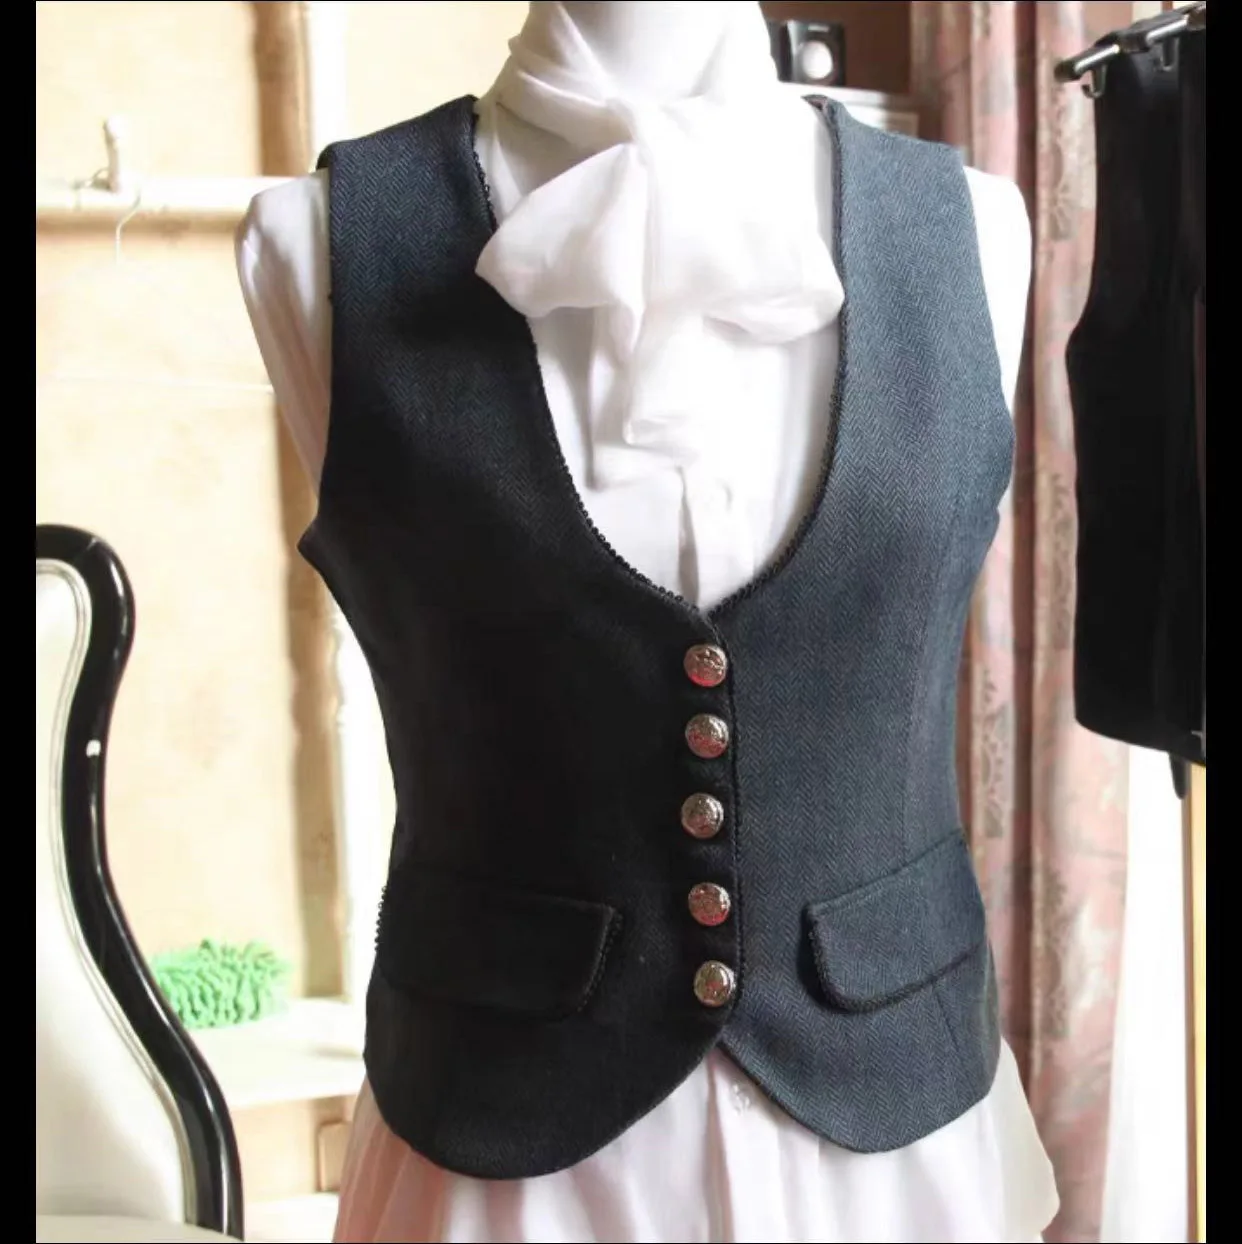 Ladies Herringbone Wool Tweed U Neck Business Tank Top Slim Fit Small Lace Ladies Vintage Office Formal Workwear